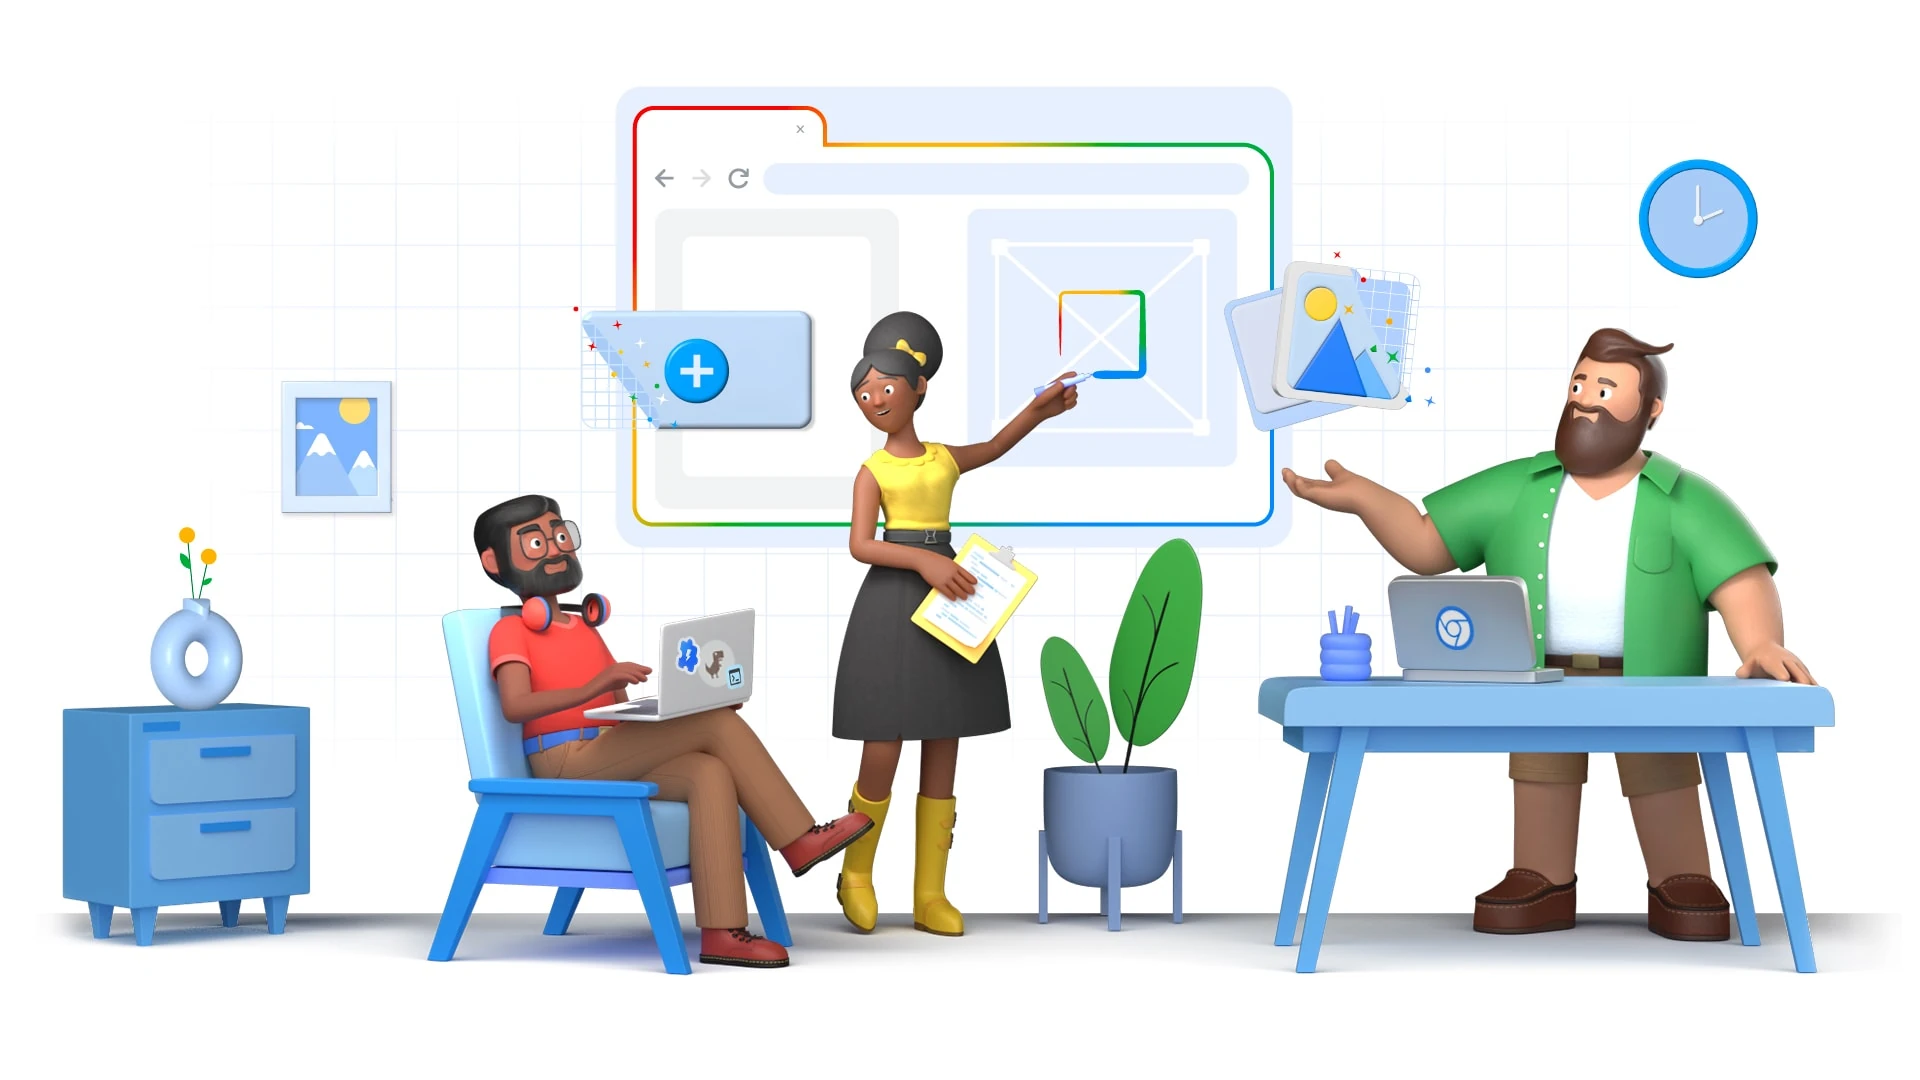 Imagem ilustrativa mostrando um grupo diverso de pessoas construindo um site em um quadro branco